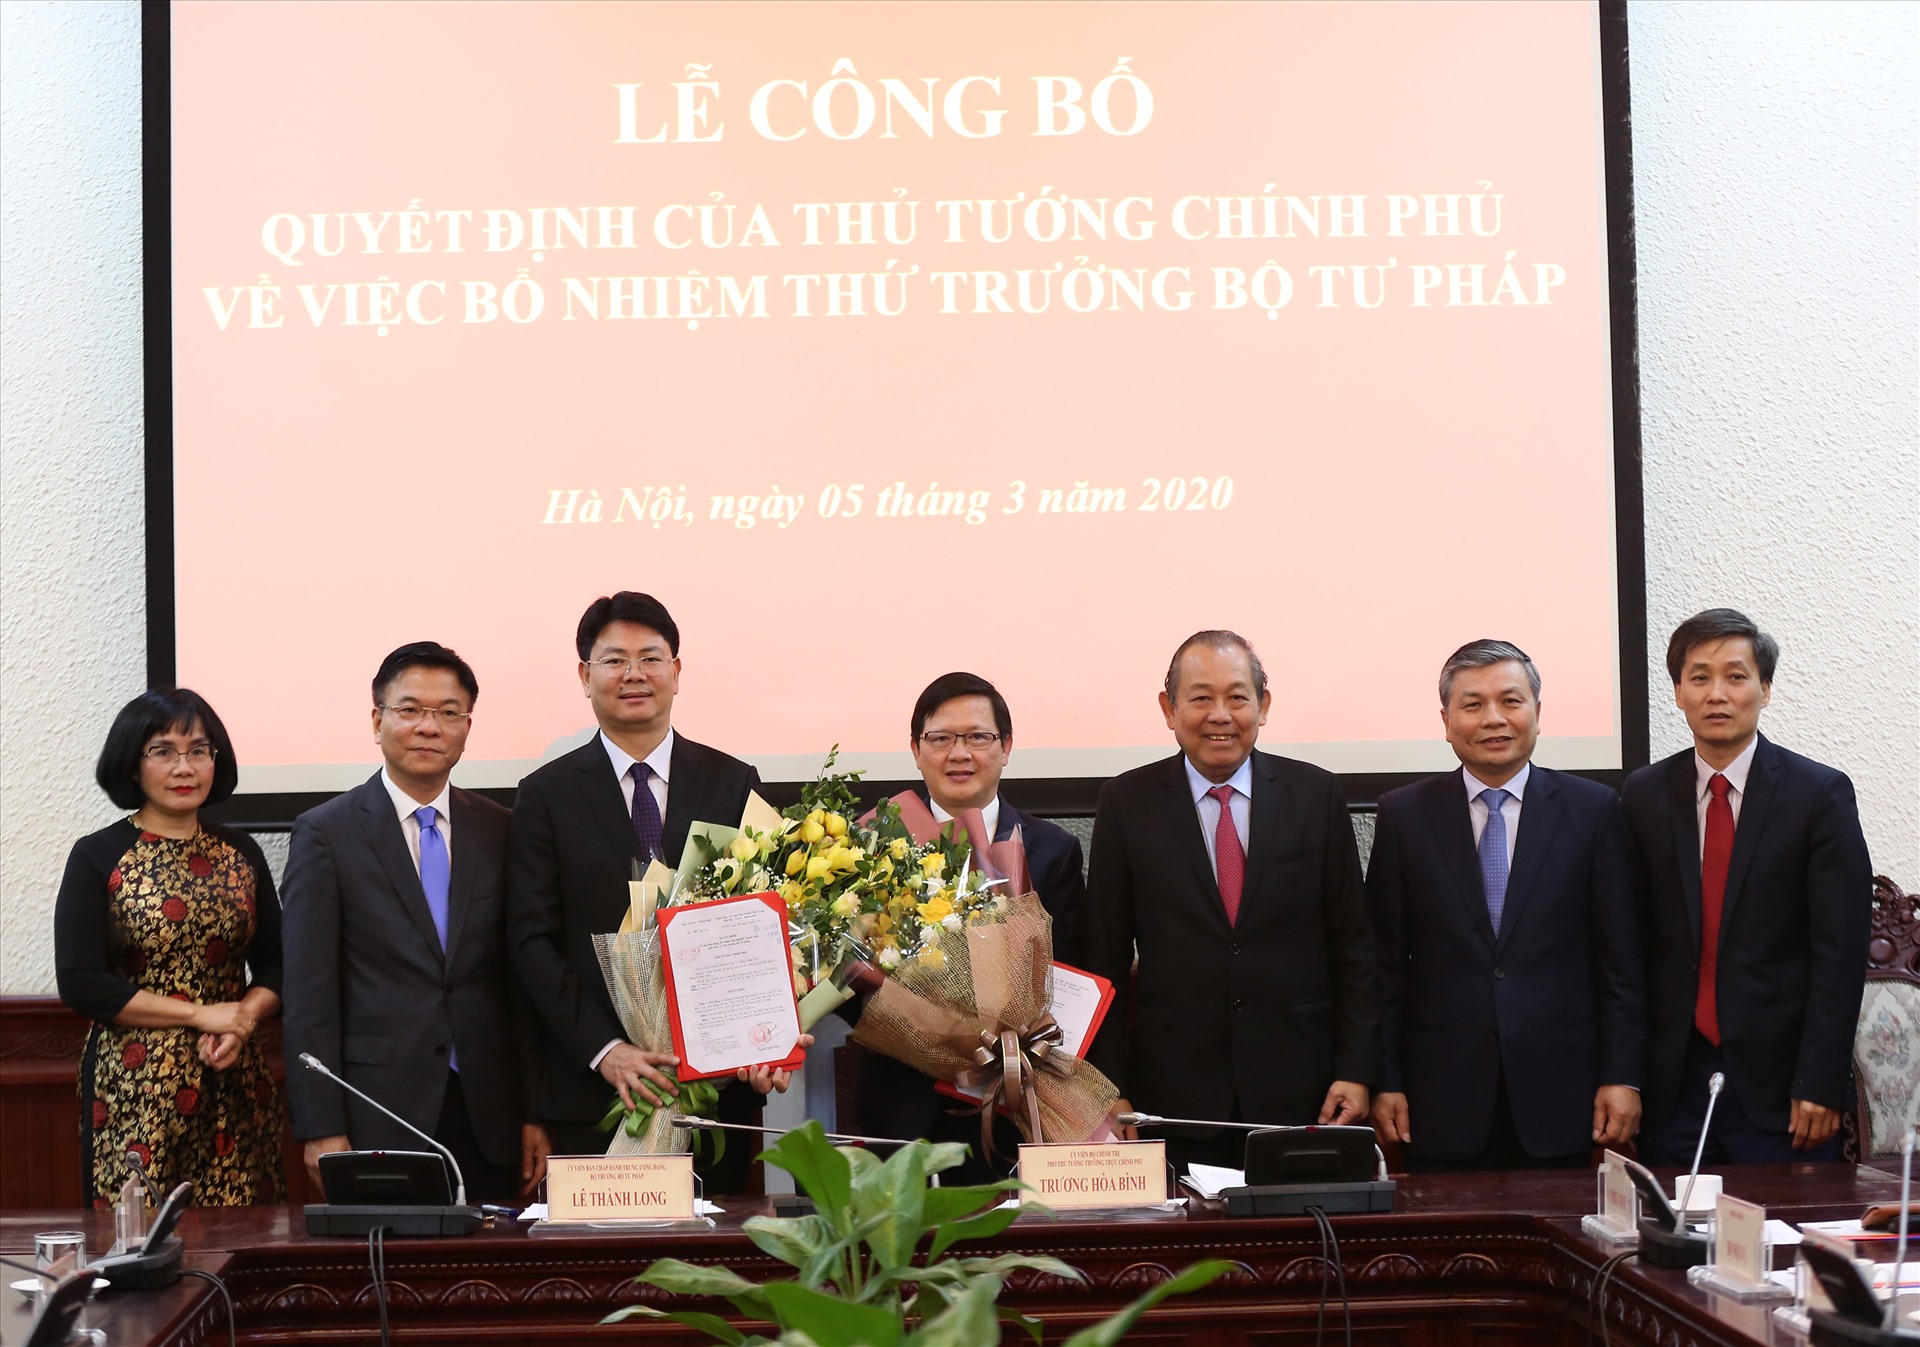 Phó Thủ tướng Trương Hòa Bình và lãnh đạo Bộ Tư pháp chúc mừng 2 tân Thứ trưởng. Ảnh: VGP/Lê Sơn.